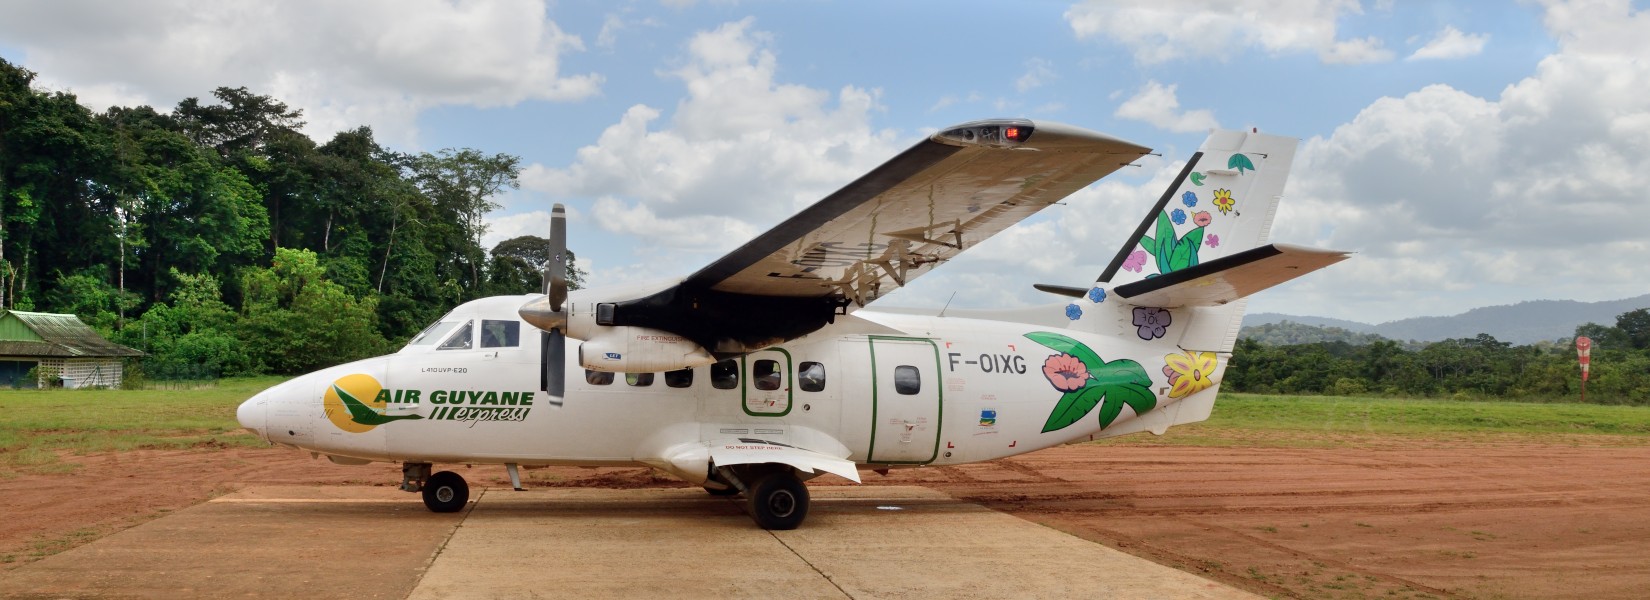 Air Guyane Saül 2013